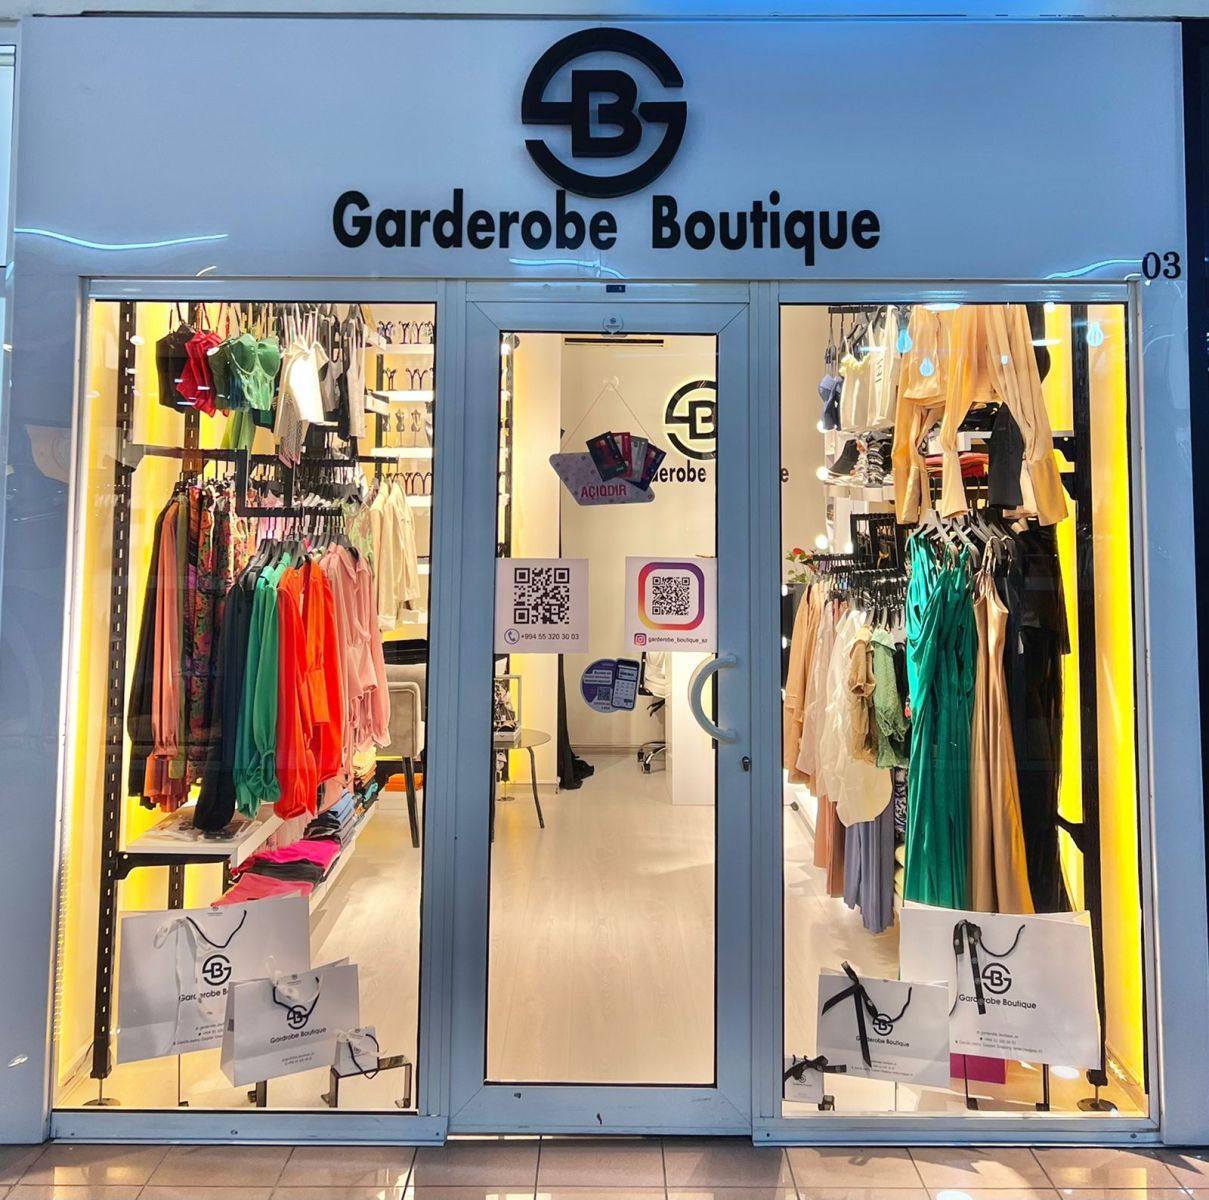 Zövqlü xanımların ünvanı: “Garderobe boutique” sizə yeni imkanlar təqdim edir - FOTOLAR